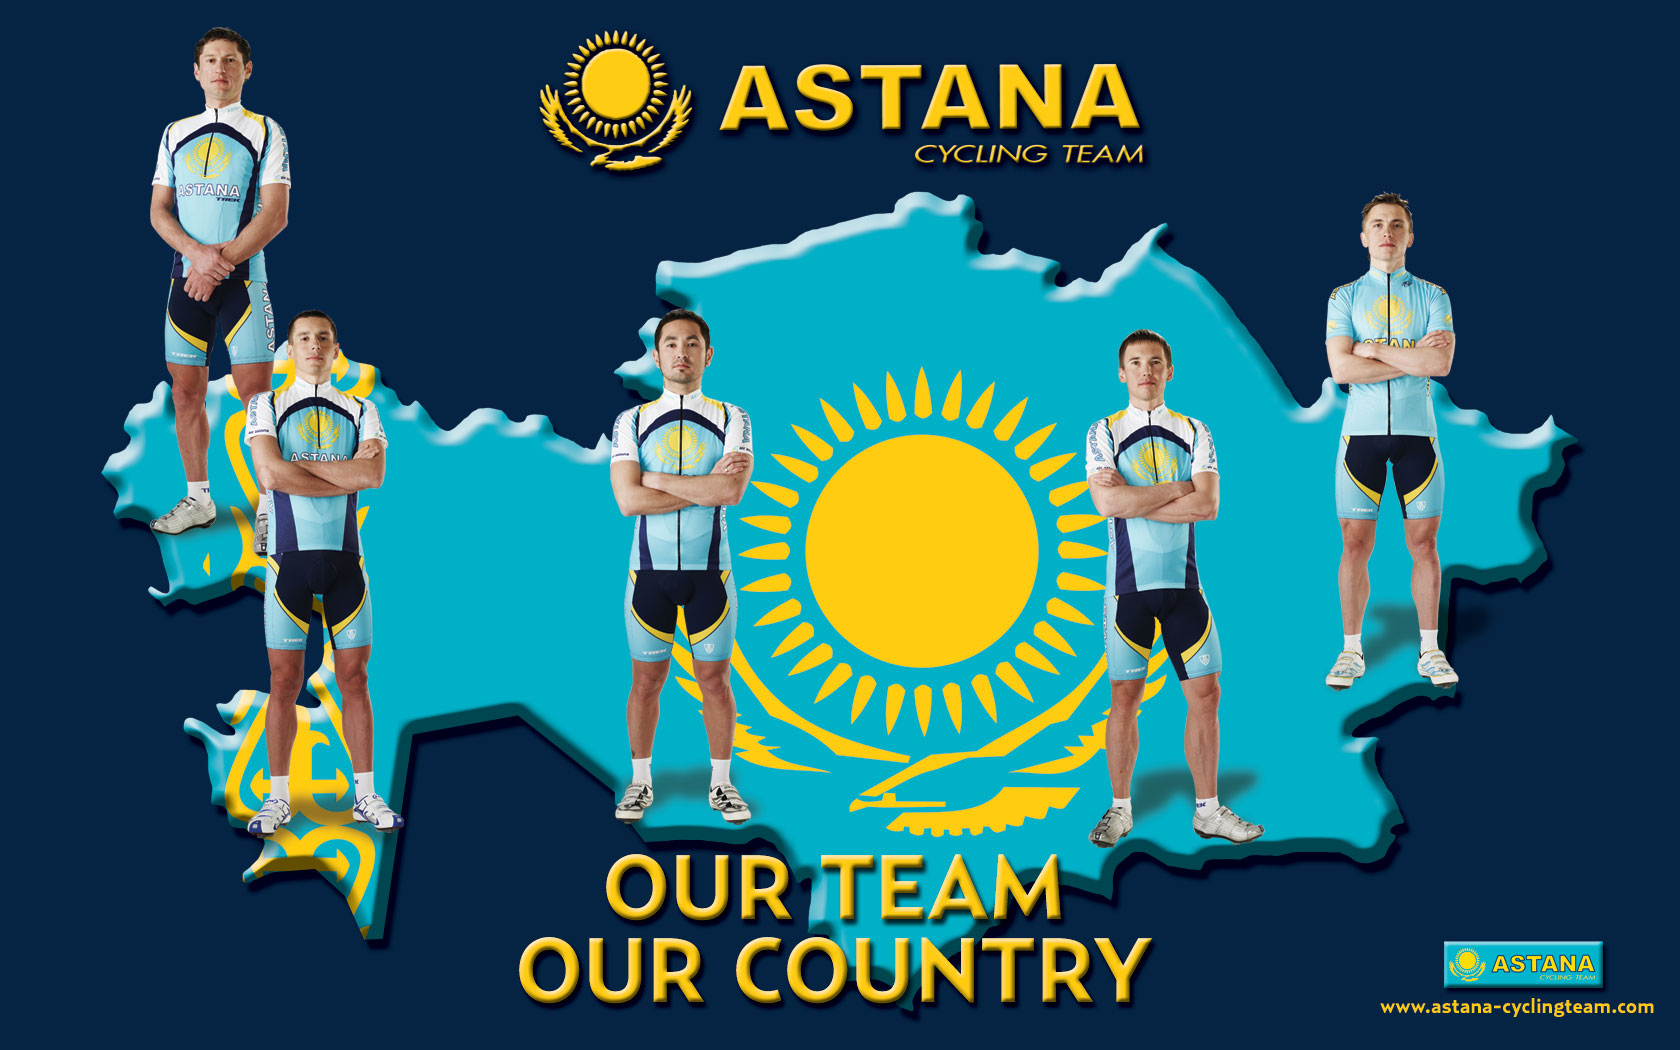 Astana fans